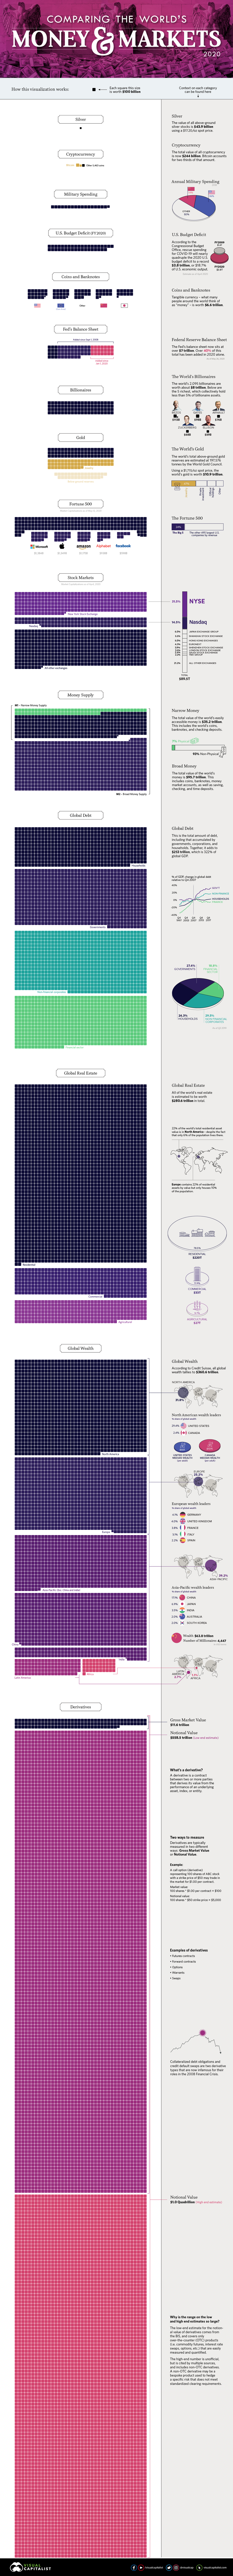 Инфографика  - "Все деньги мира 2020"